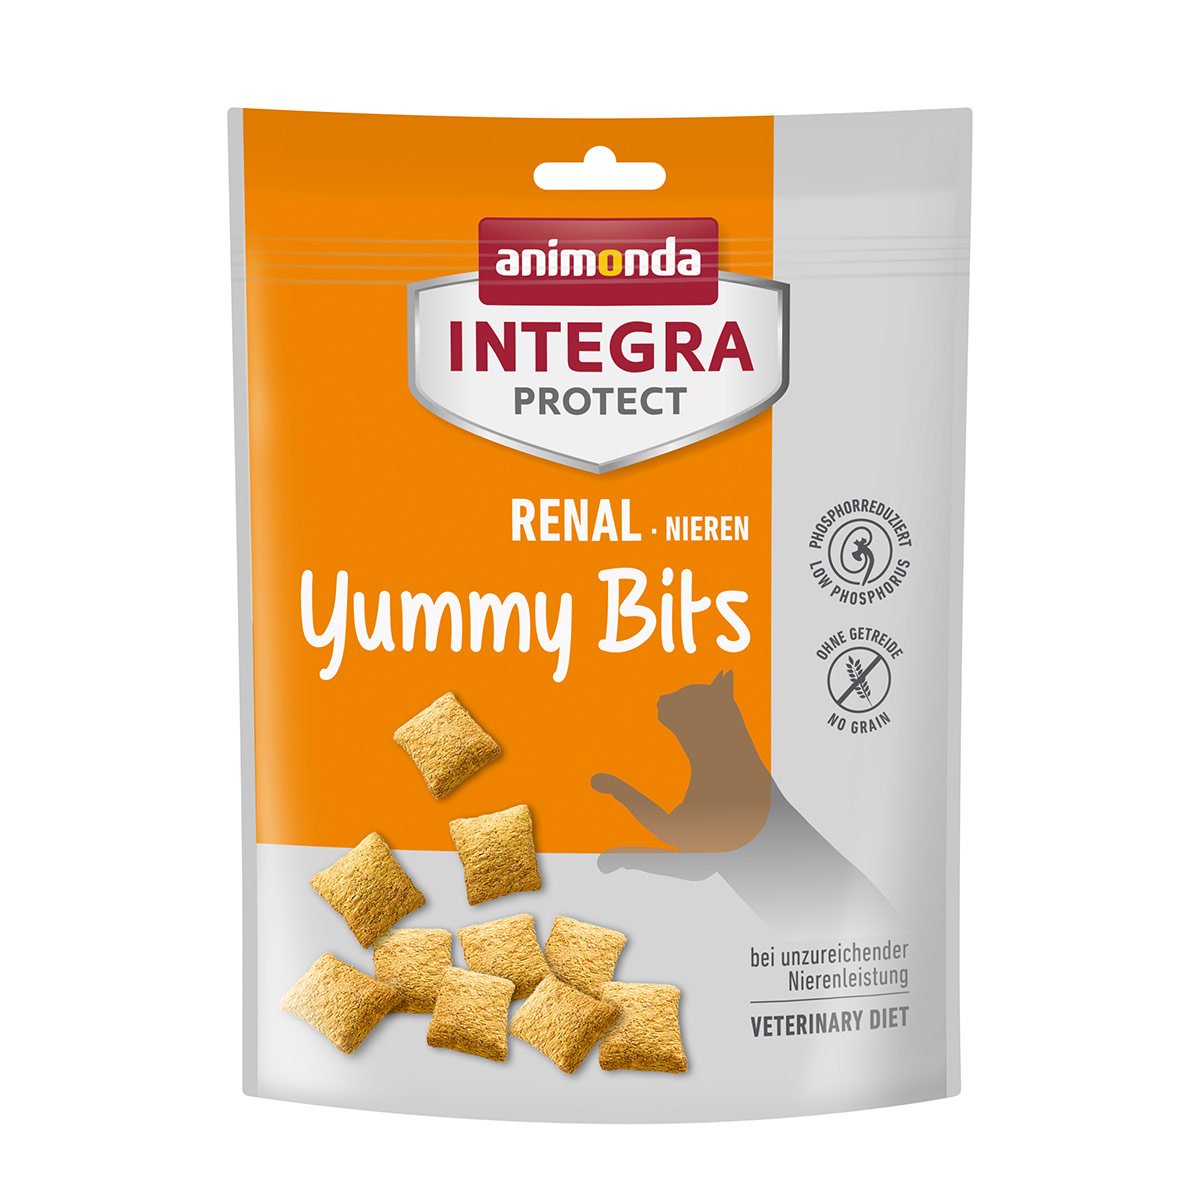 animonda INTEGRA PROTECT Adult Renal Yummy Bits 6x120g von animonda Integra Protect